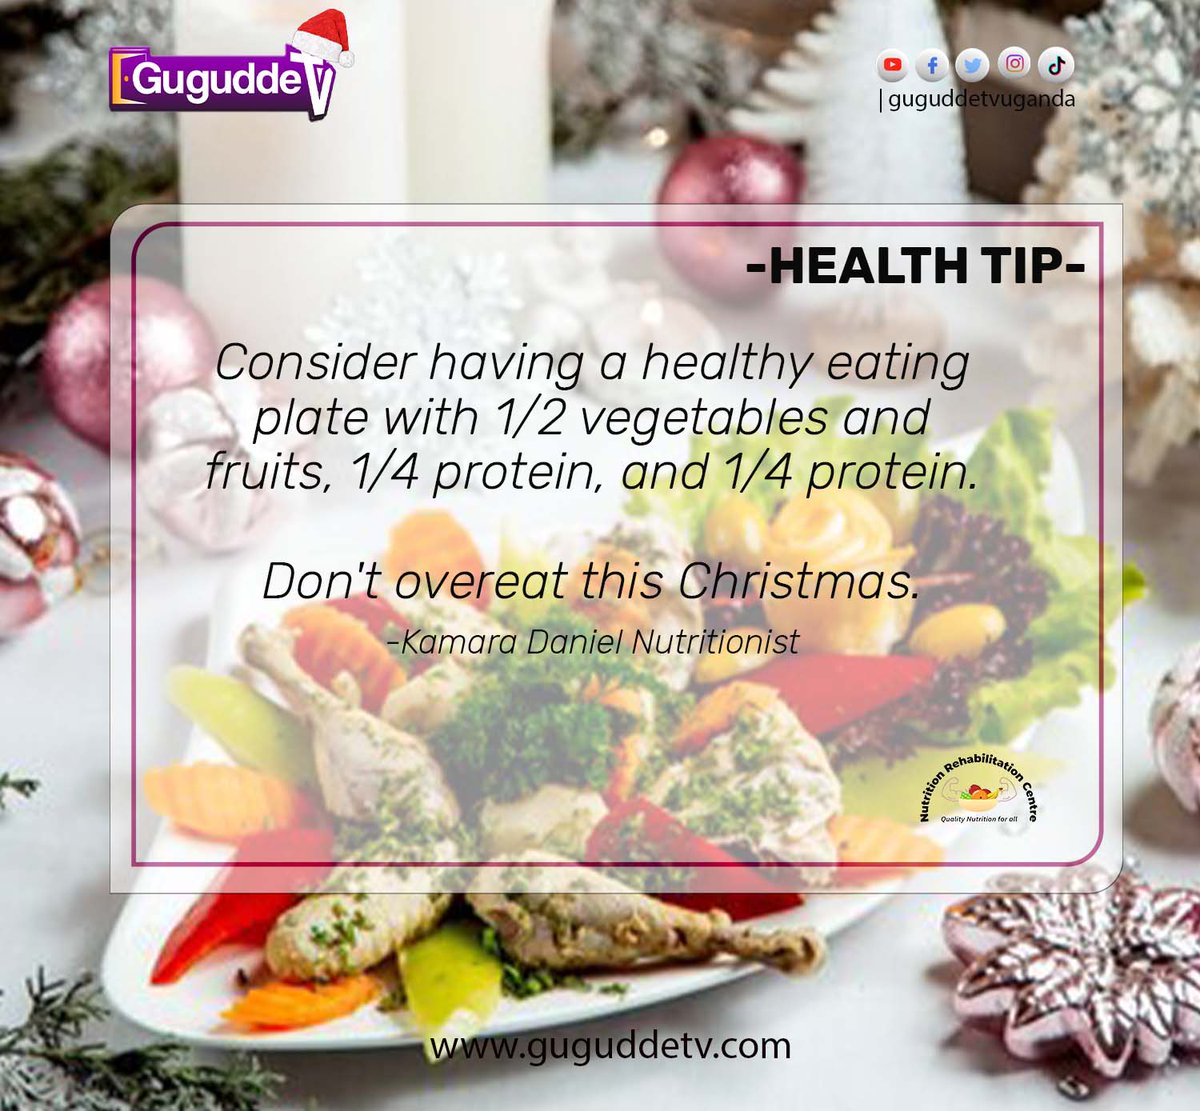 Health Tip | Don't over eat this Christmas. #GuguddeTvHealth #GuguddeTvUganda